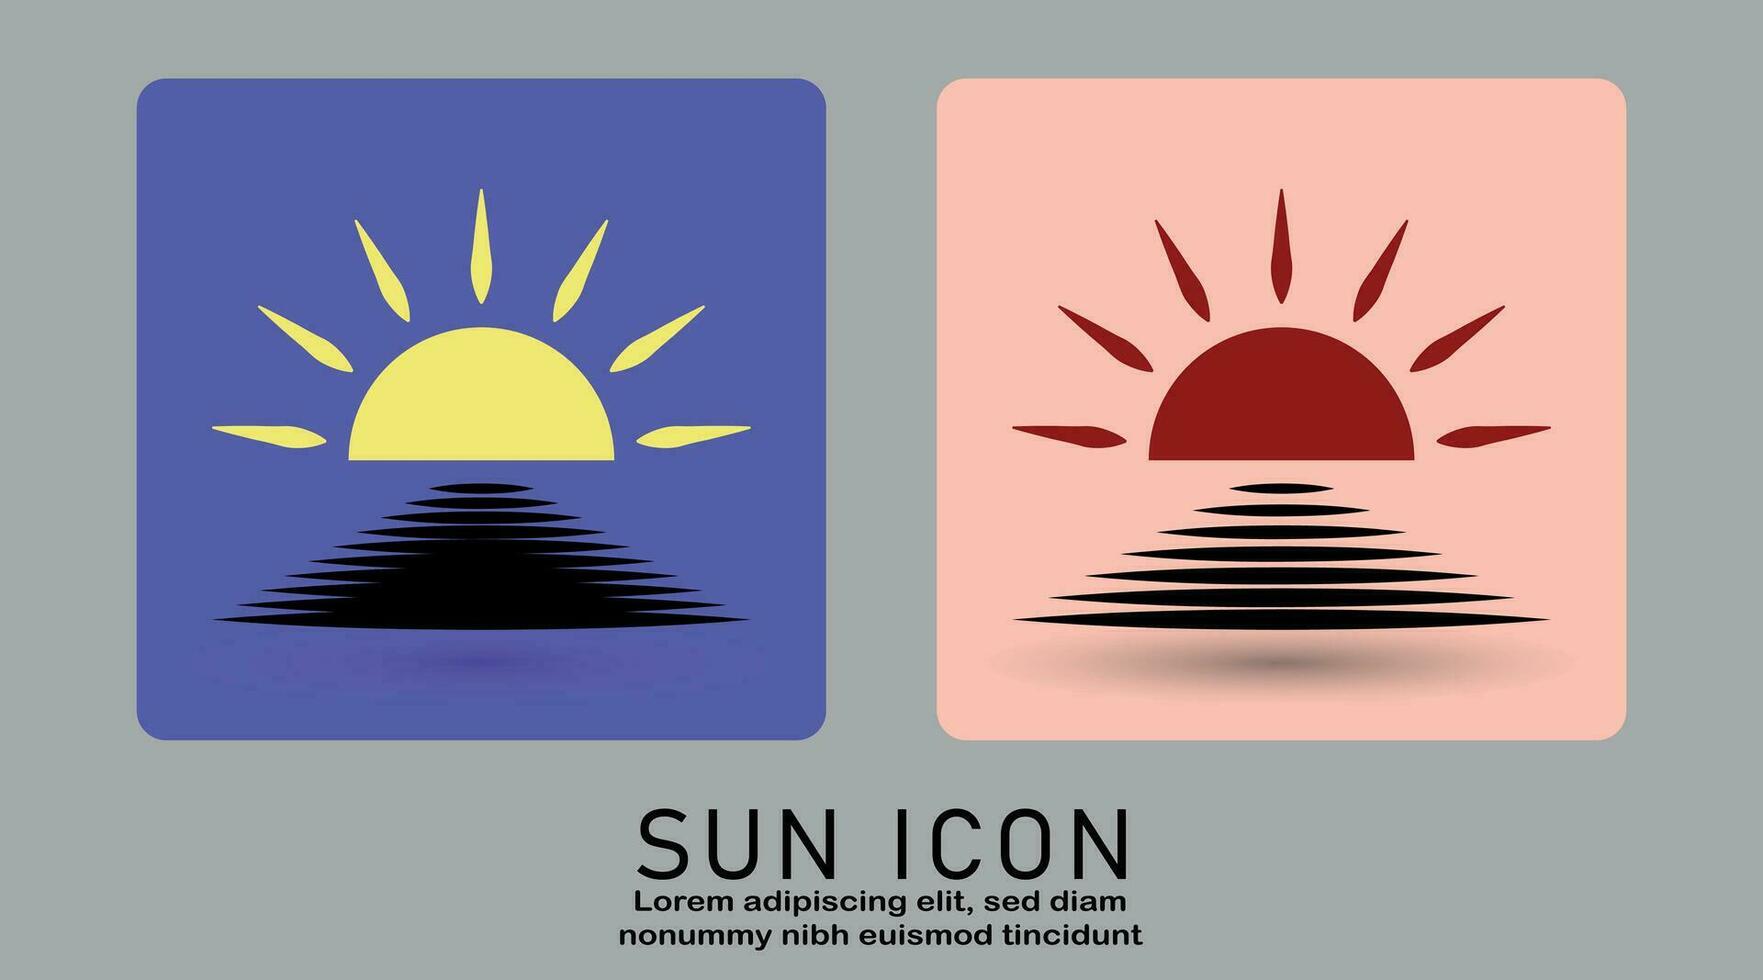 Sonnenaufgang oder Sonnenuntergang Symbol, Sonne Symbol Vektor isoliert auf Weiß Hintergrund.